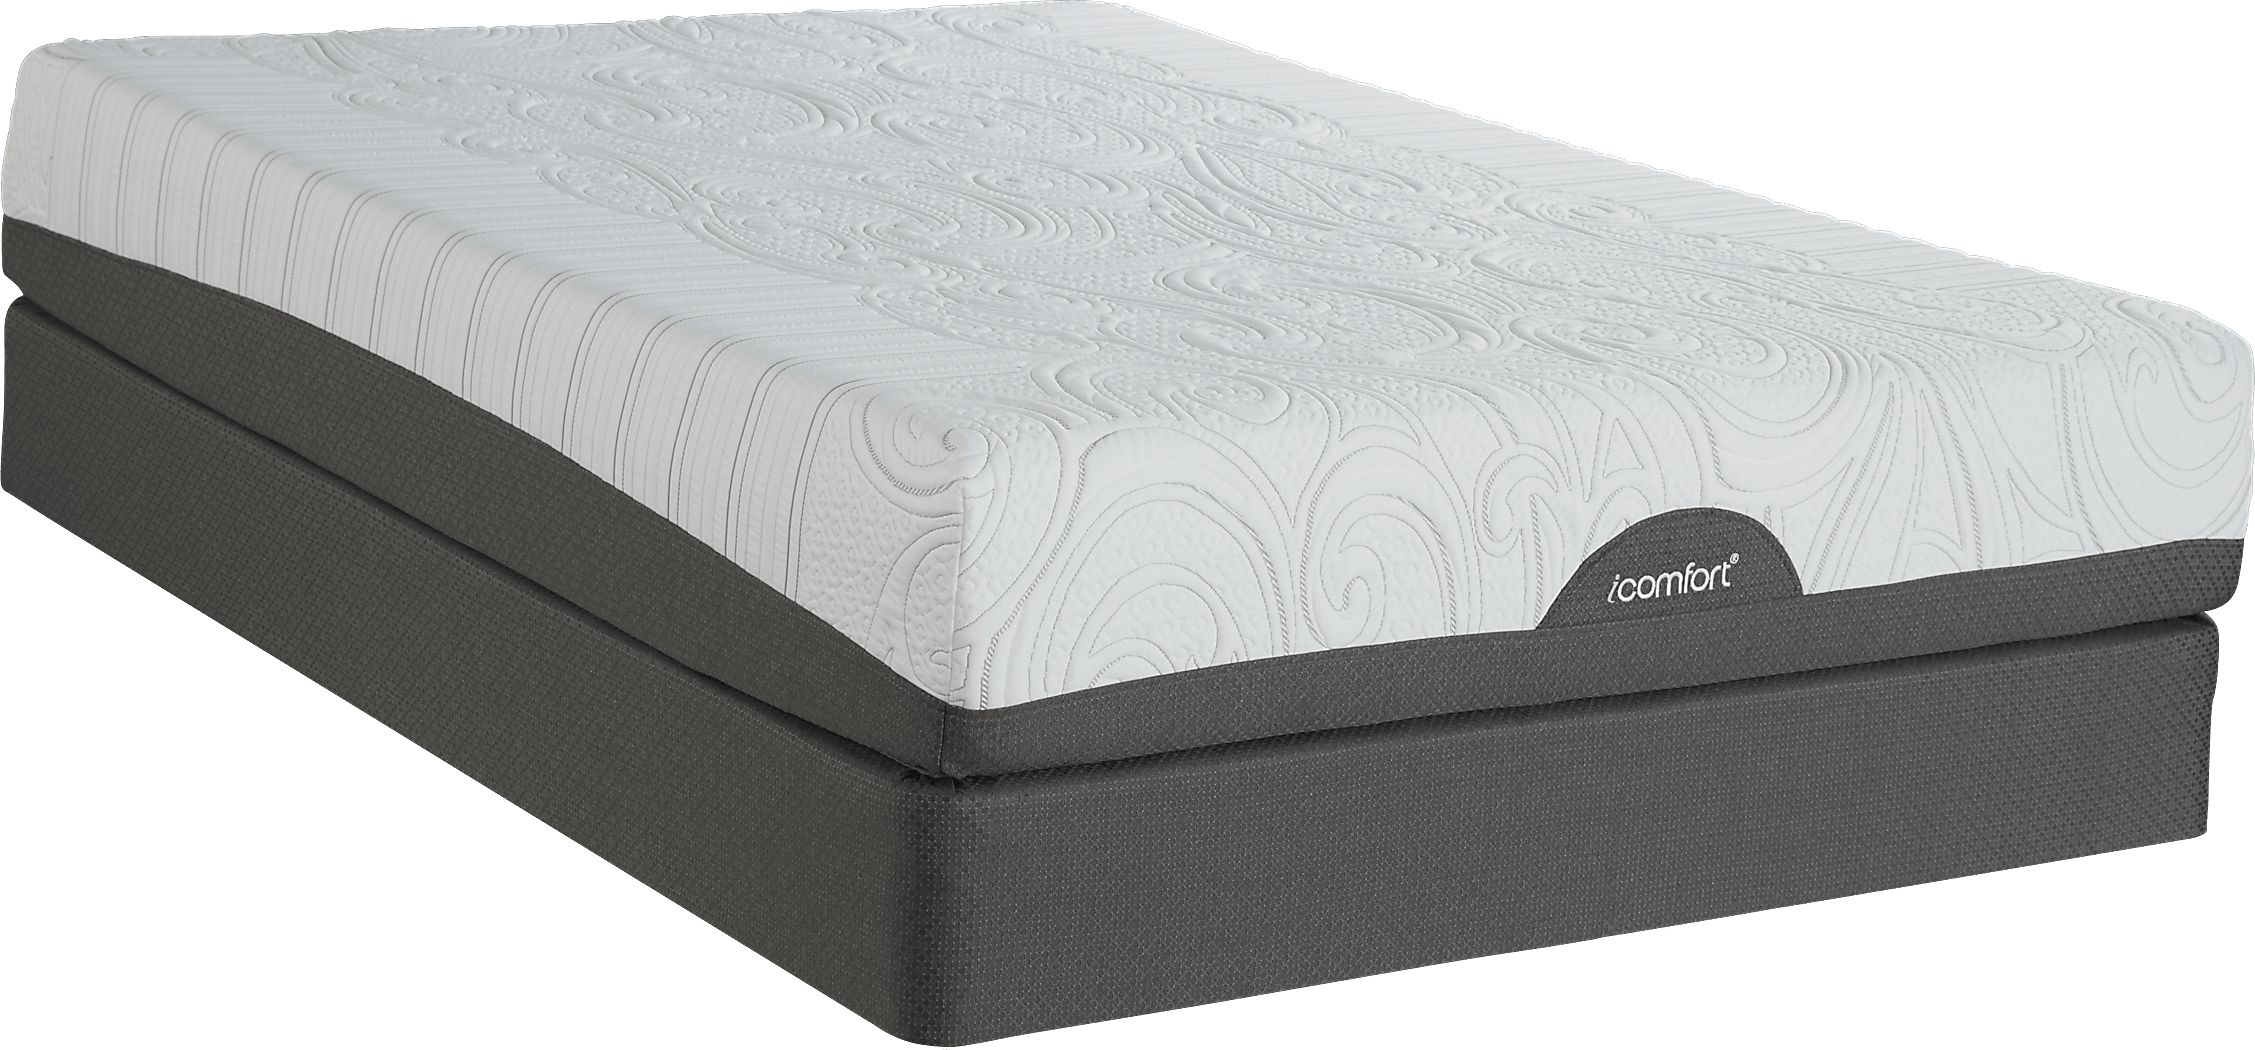 icomfort savant queen mattress reviews